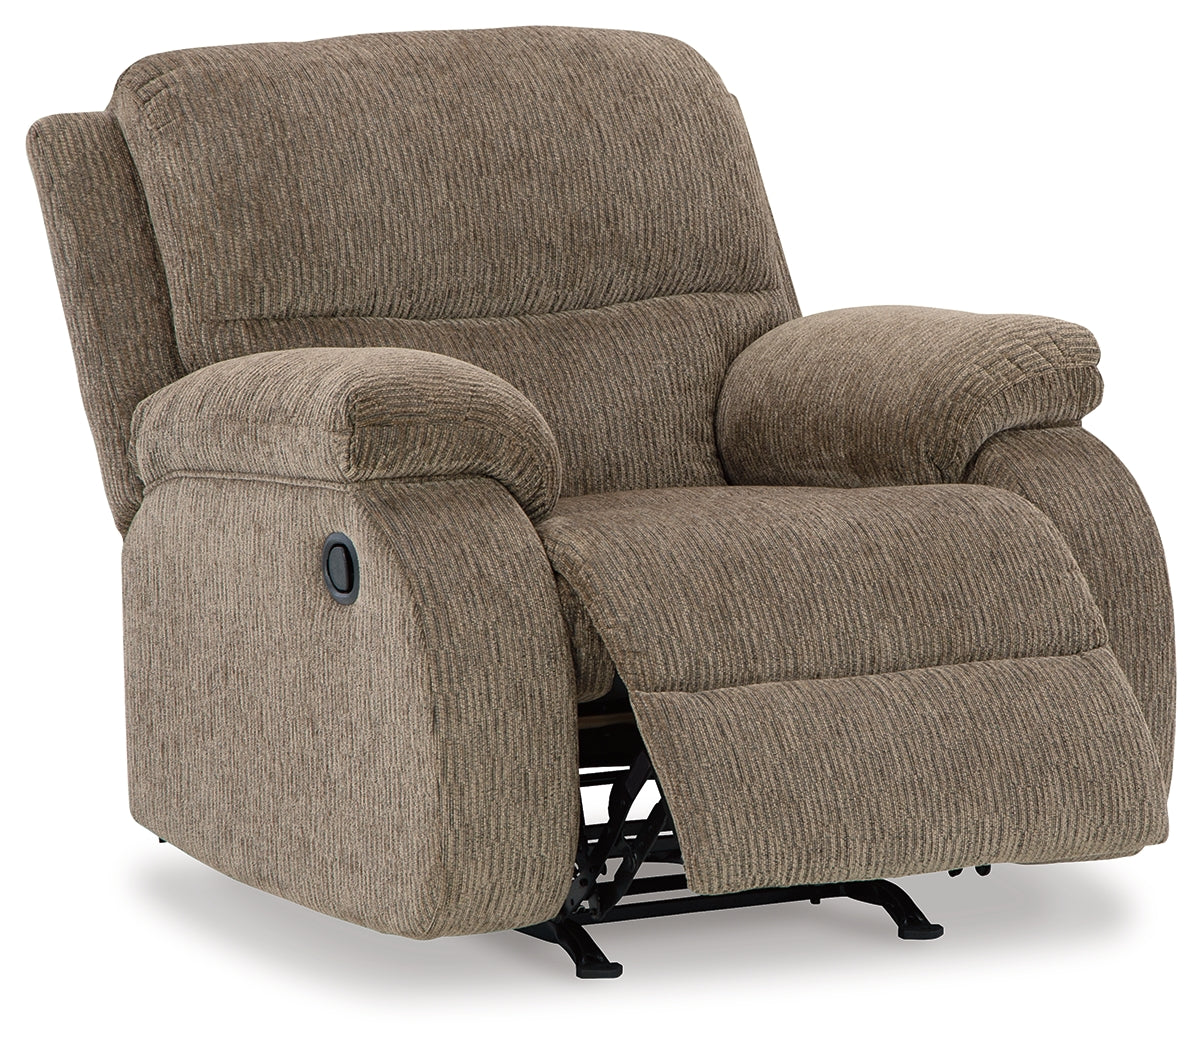 Scranto Oak Recliner - 6650425 - Luna Furniture